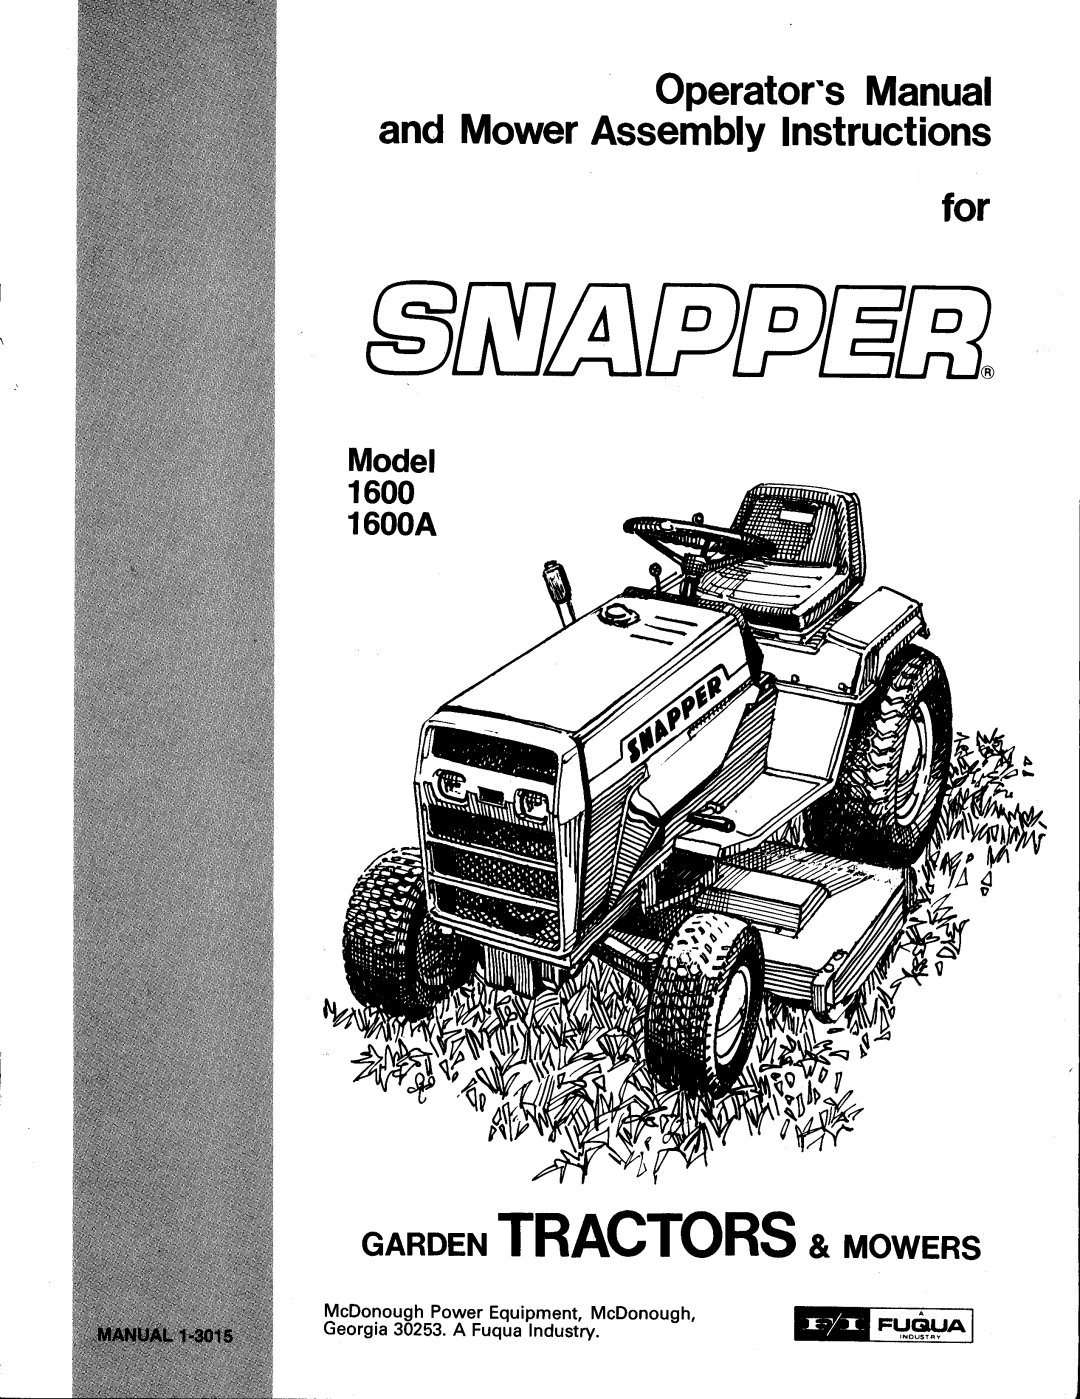 Snapper 1600A manual 